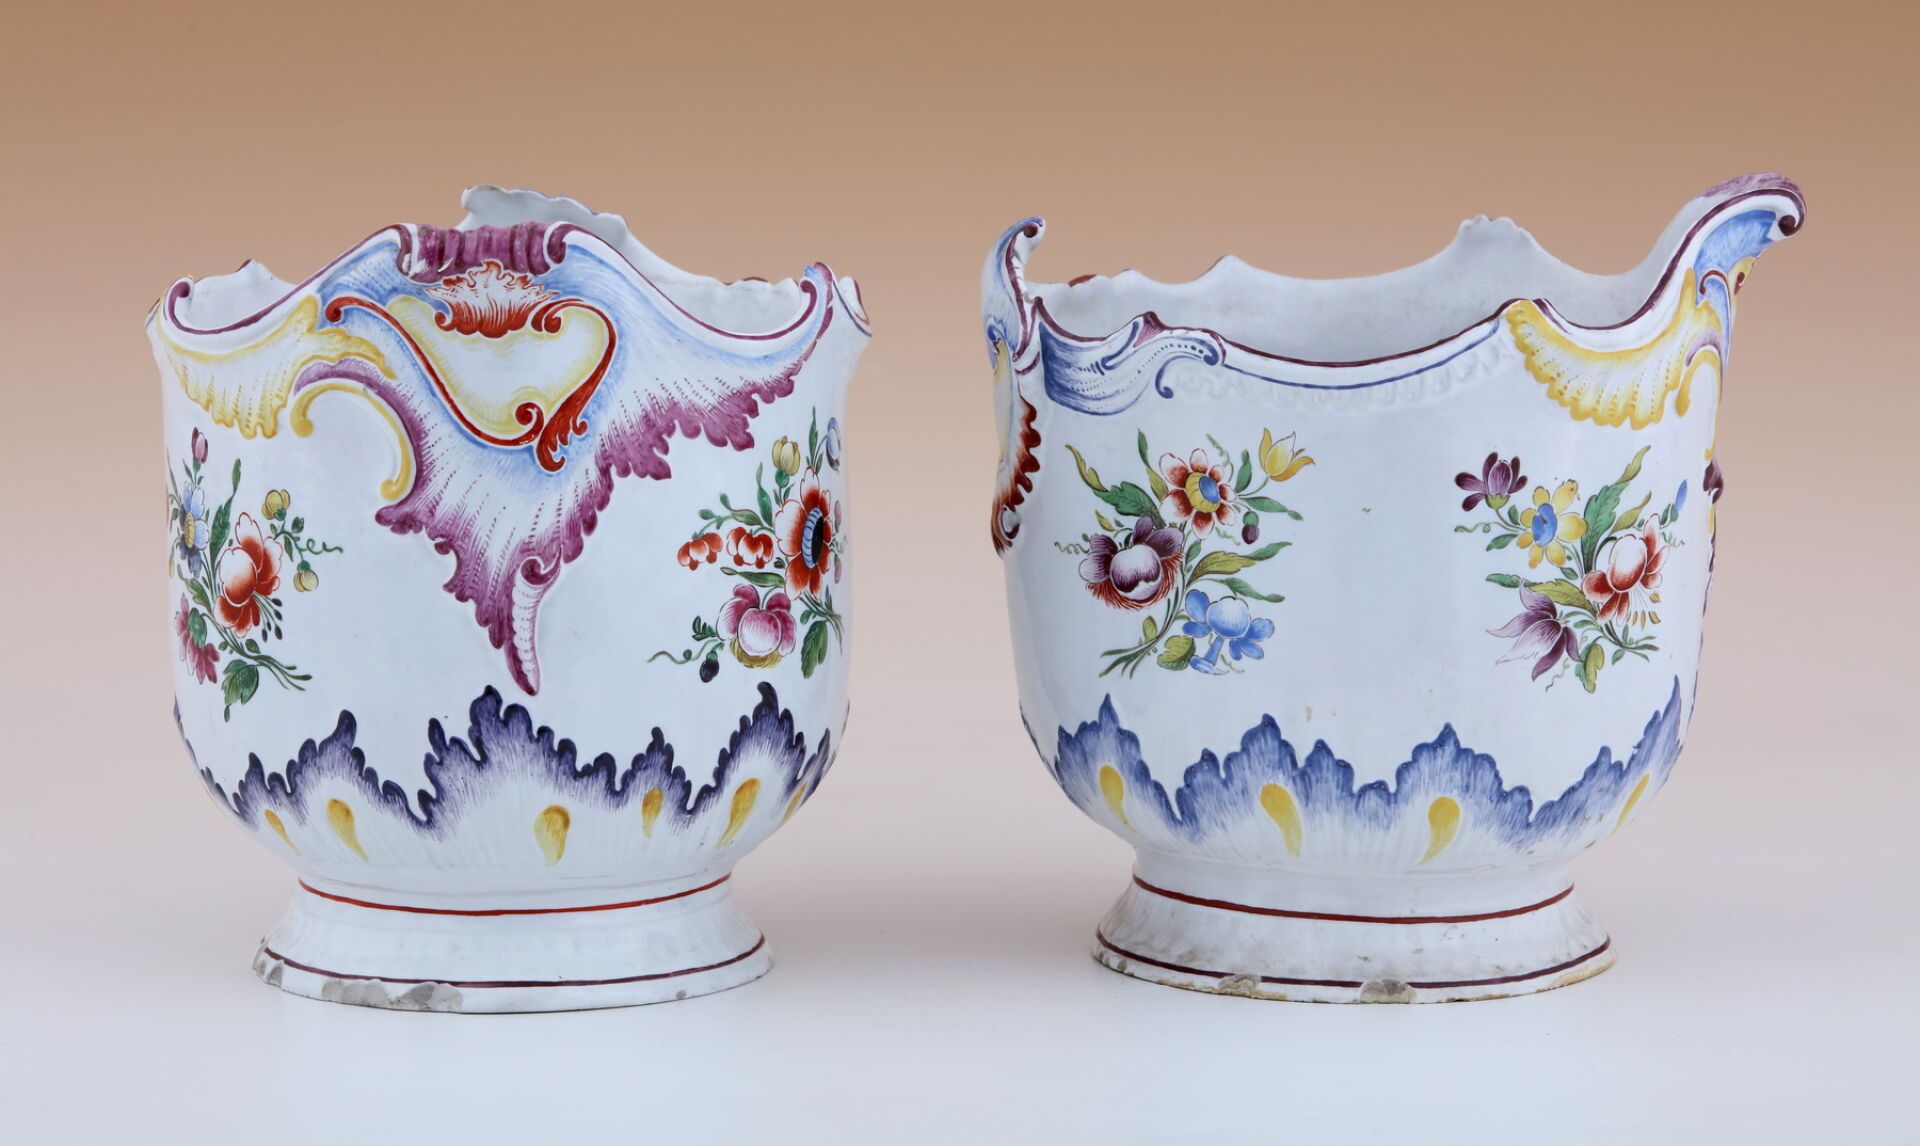 Null 一对咖啡壶
18 世纪风格 - 19 世纪时期
多色陶器，饰有罗卡耶和花束
H.20 厘米
(高 20 厘米）